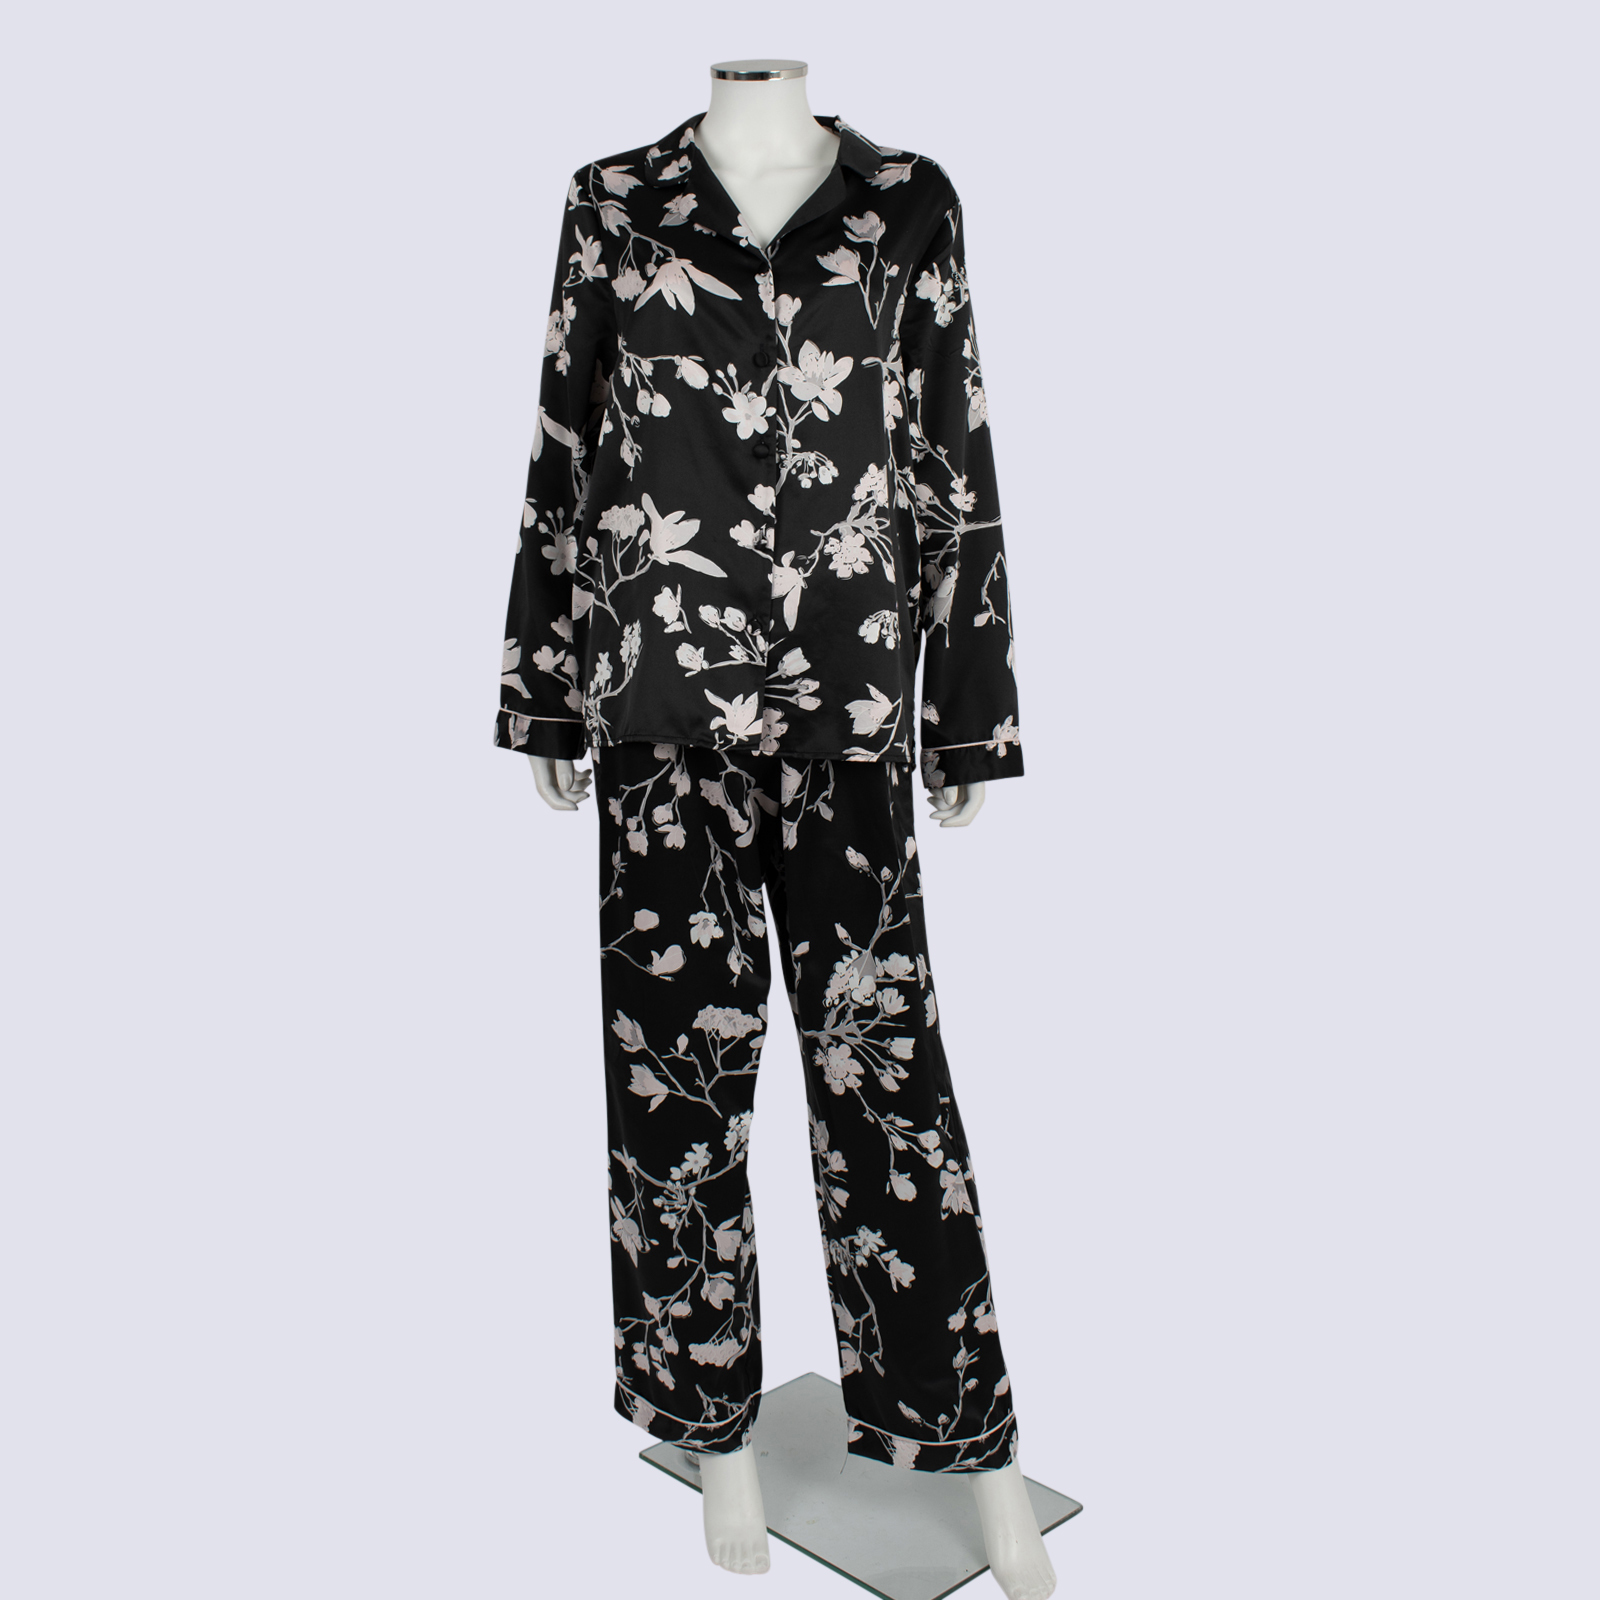 Chloe & Lola Black Floral Satin Pajamas Set